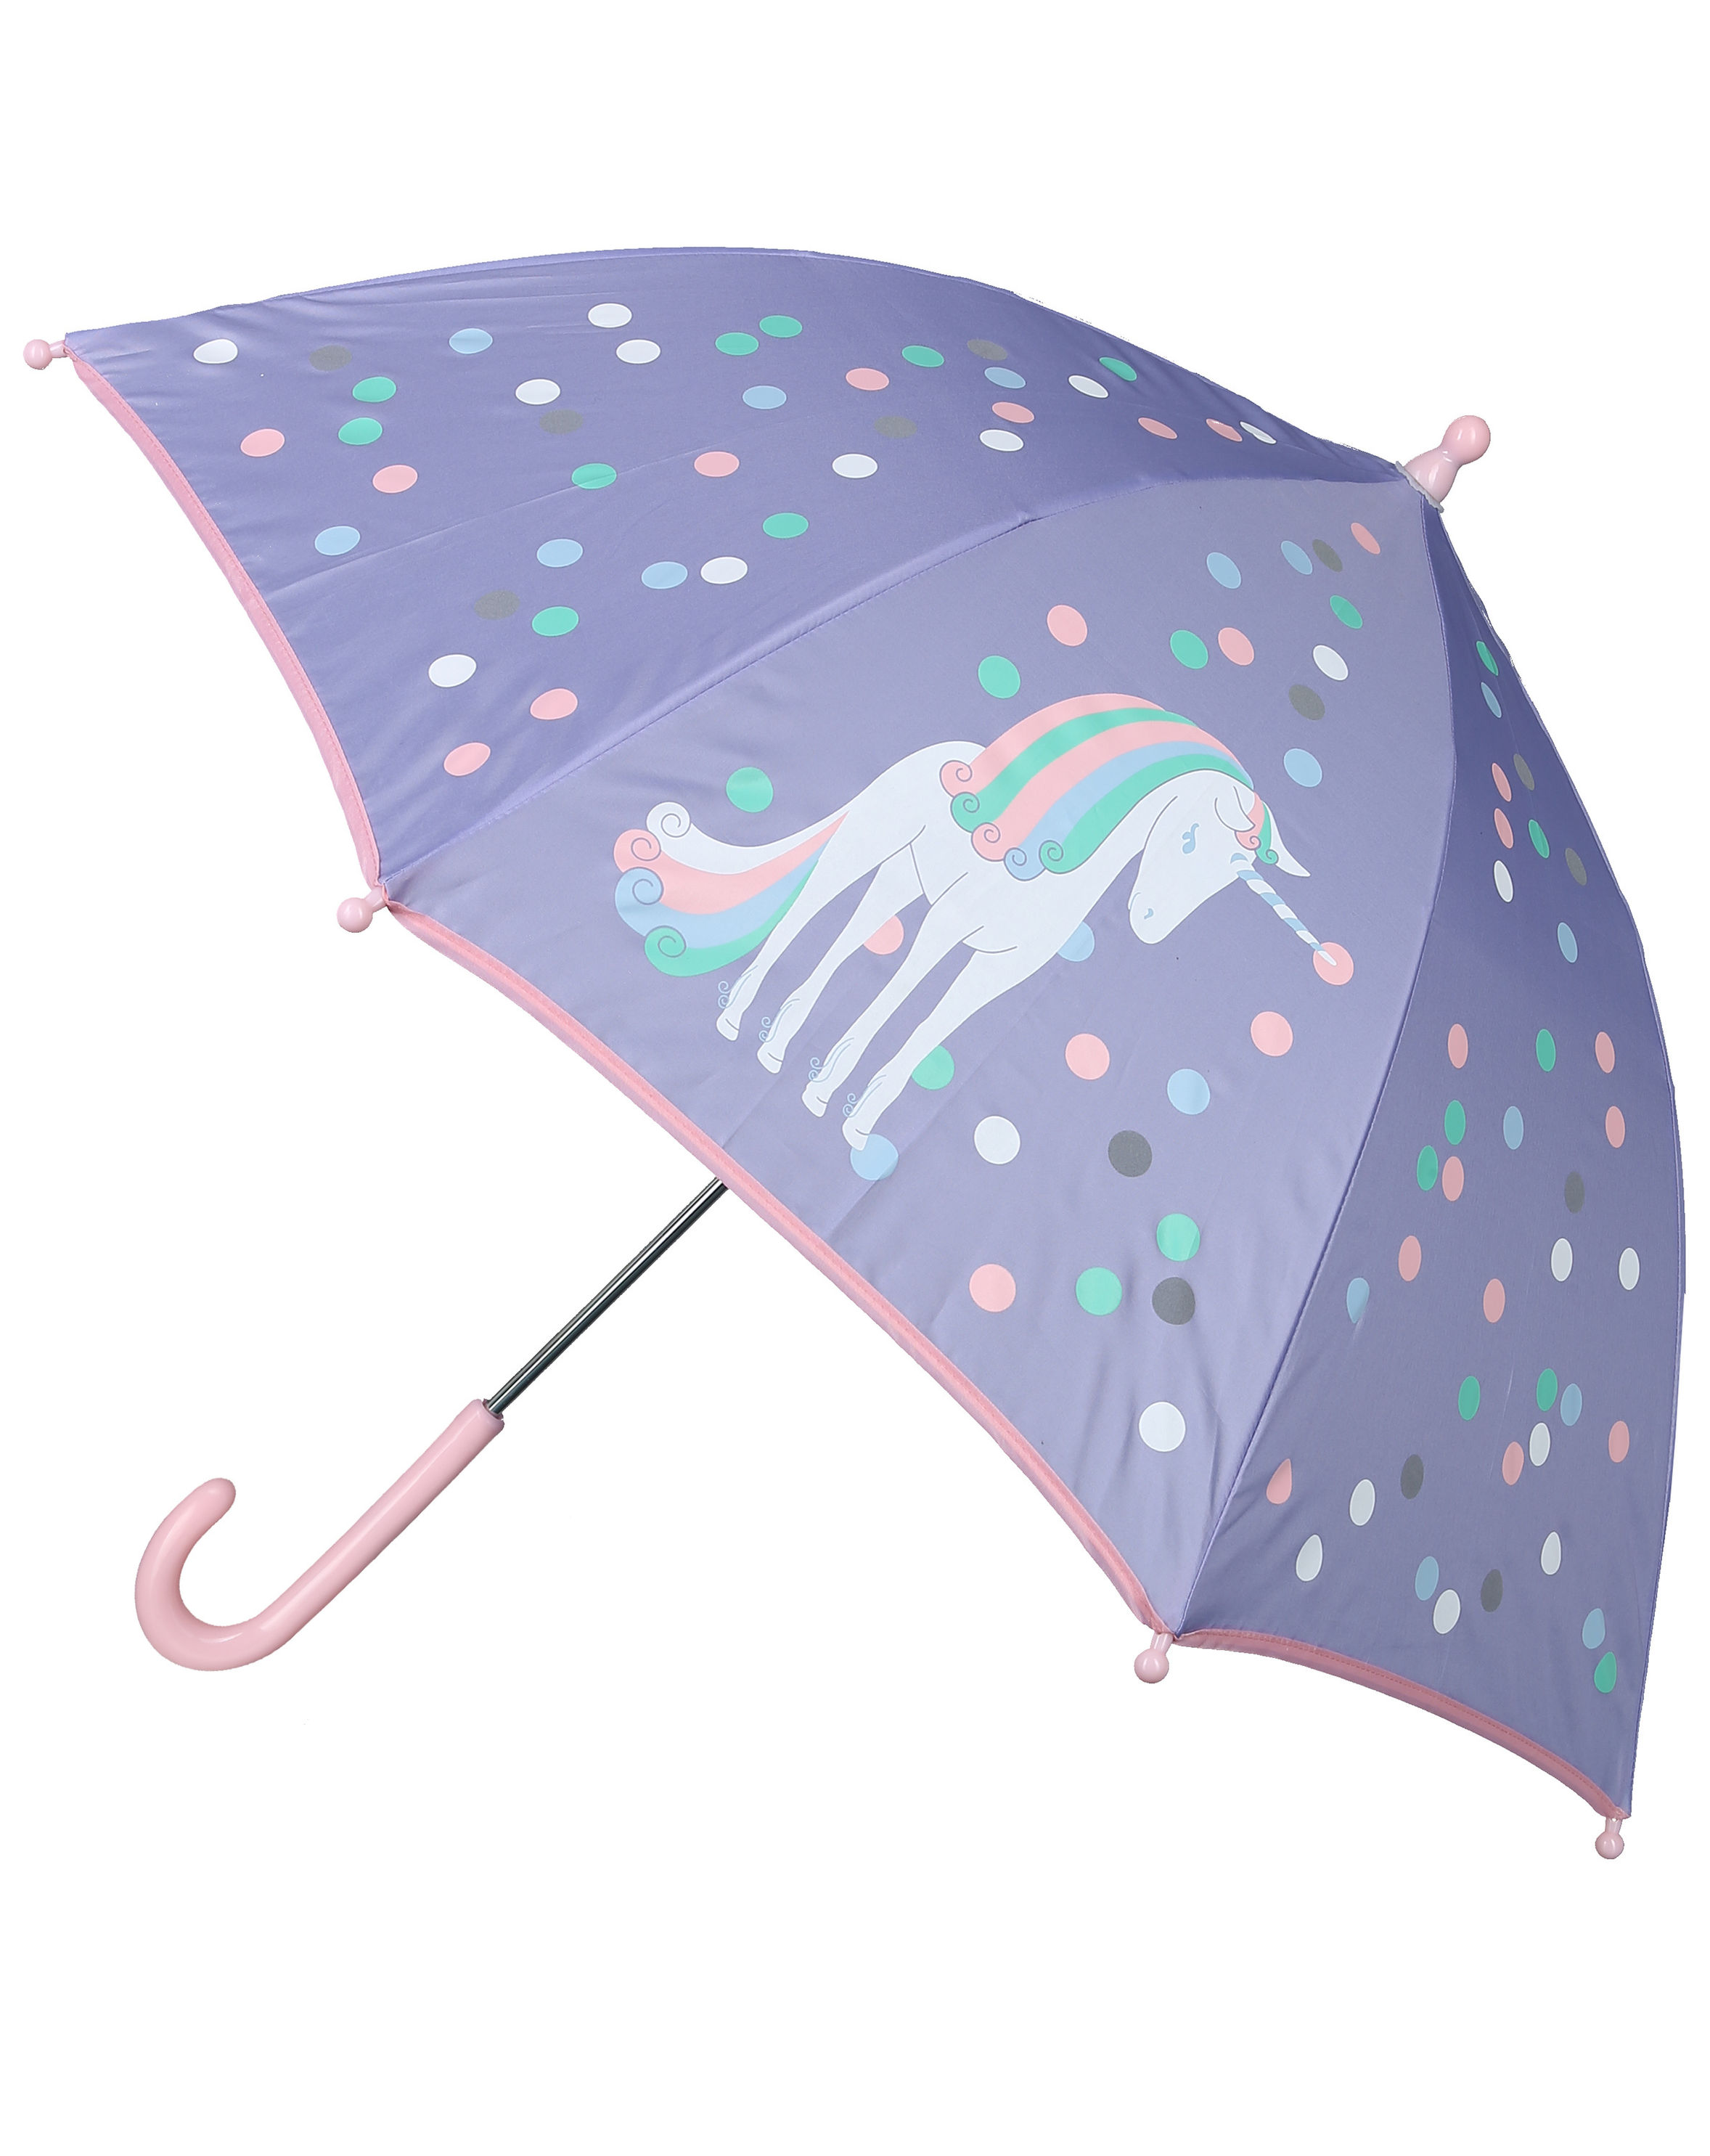 Regenschirm EINHORN reflektierend in lila bestellen | Weltbild.de